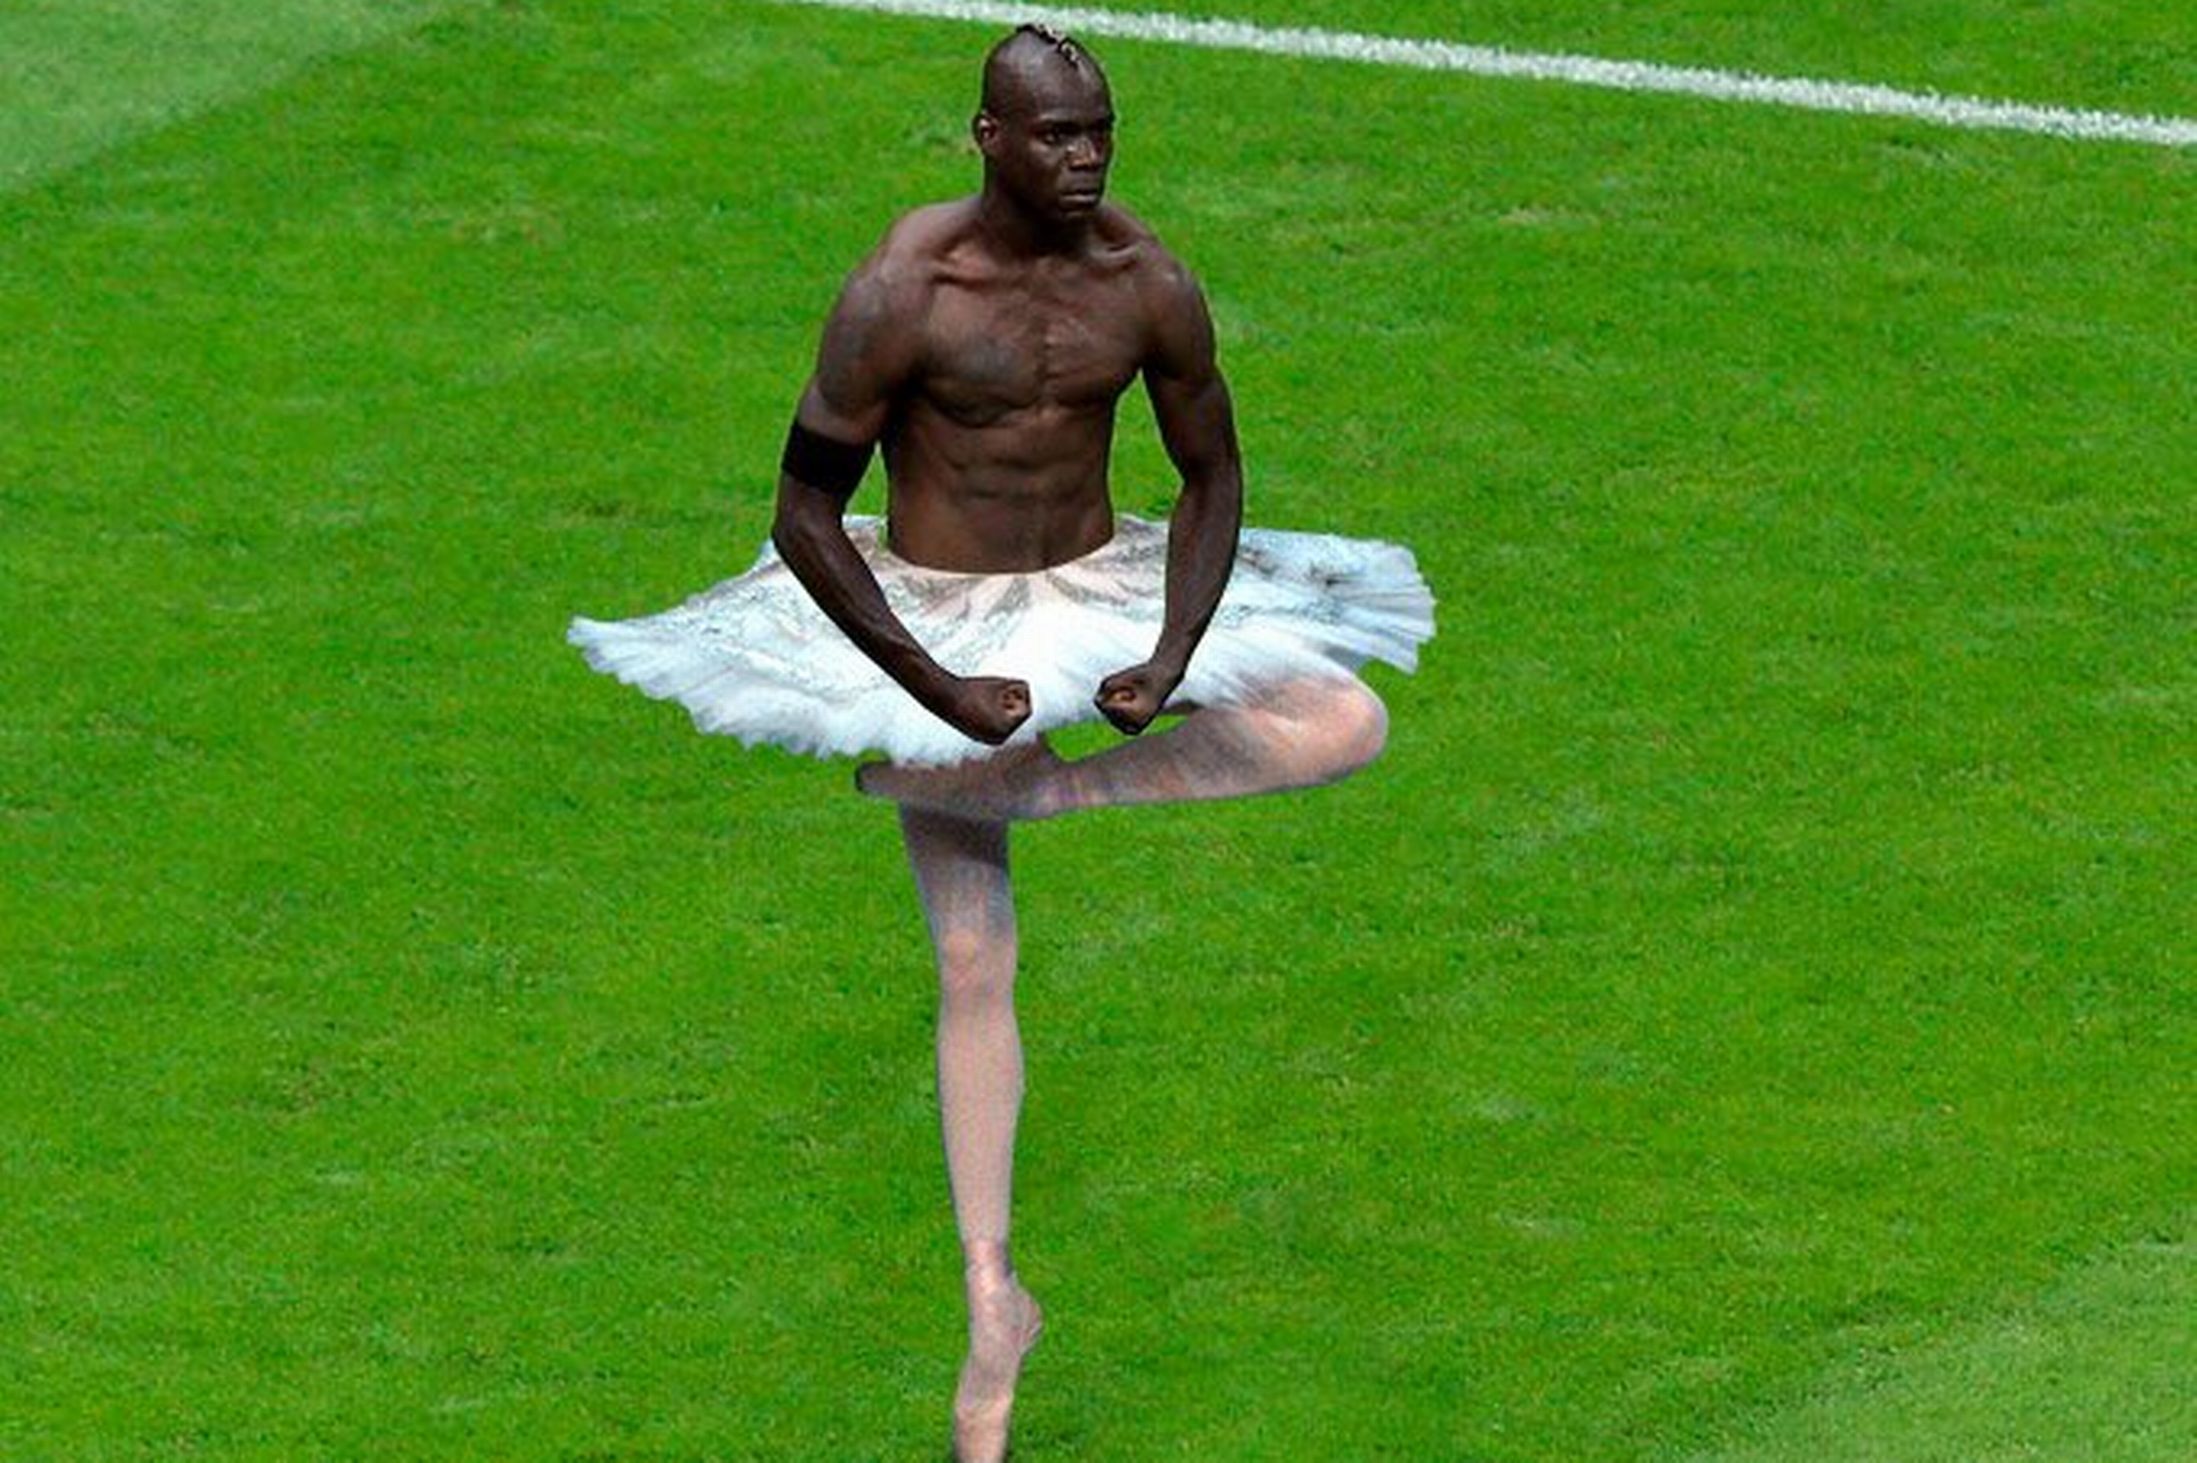 Internetanvändare världen över har redigerat Balotellis målgest till något helt annat. Först ut: ballerinan. 